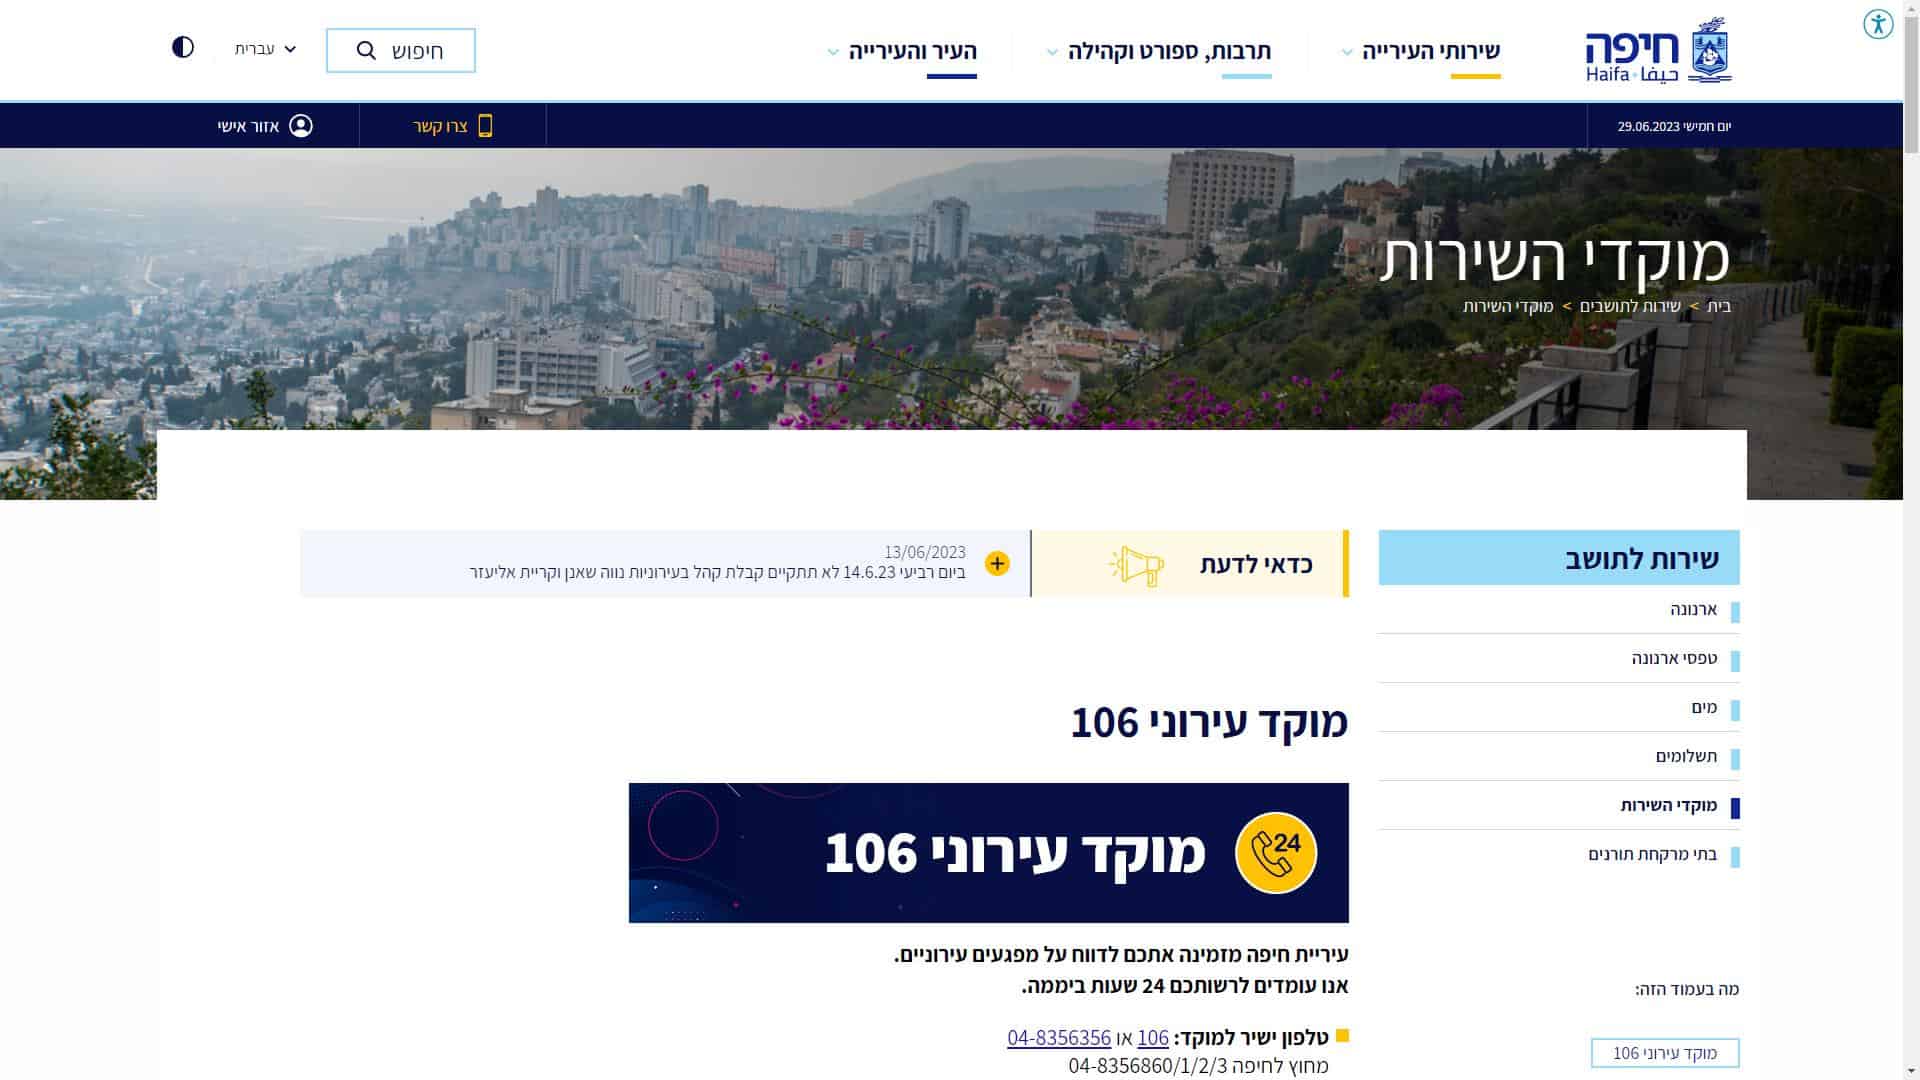 עיריית חיפה טופס יצירת קשר צילום מסך